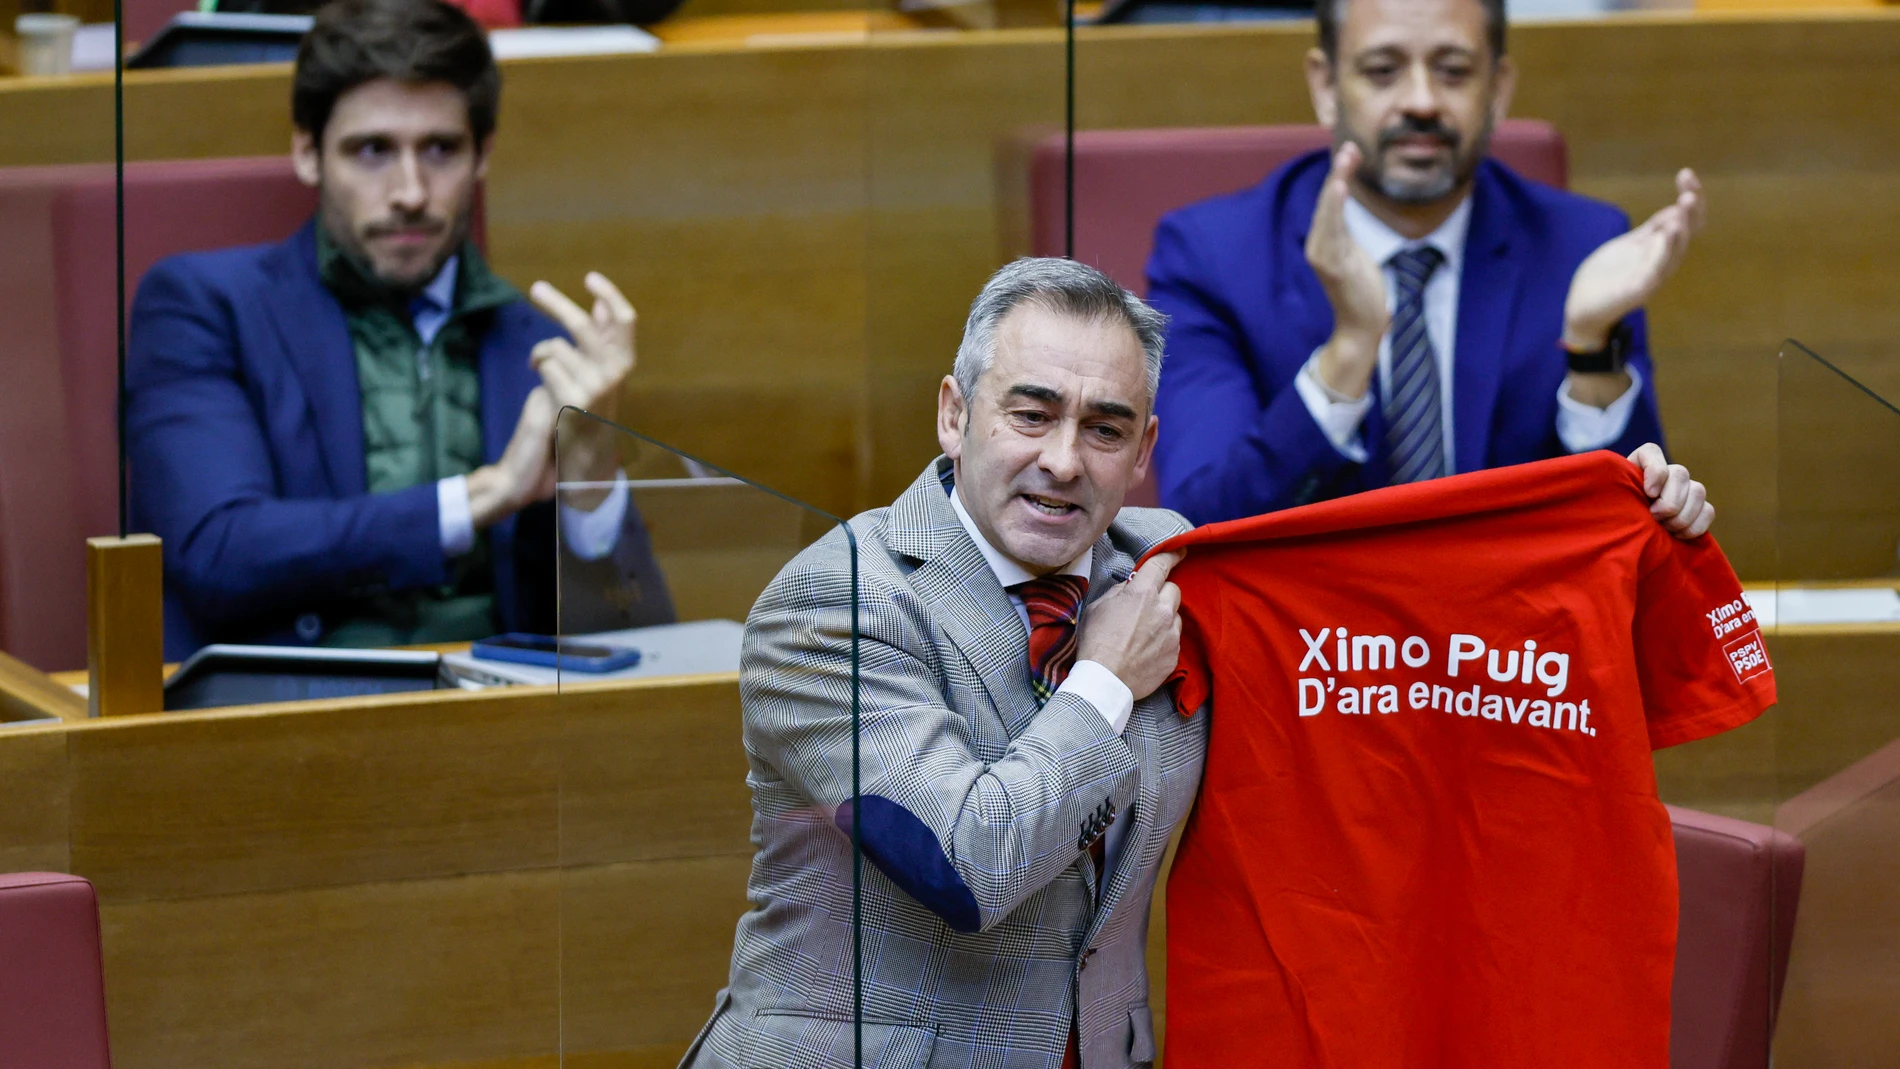 El diputado del PP, Miguel Barrachina, muestra la camiseta que dice: "Ximo Puig. D' ara endavant"